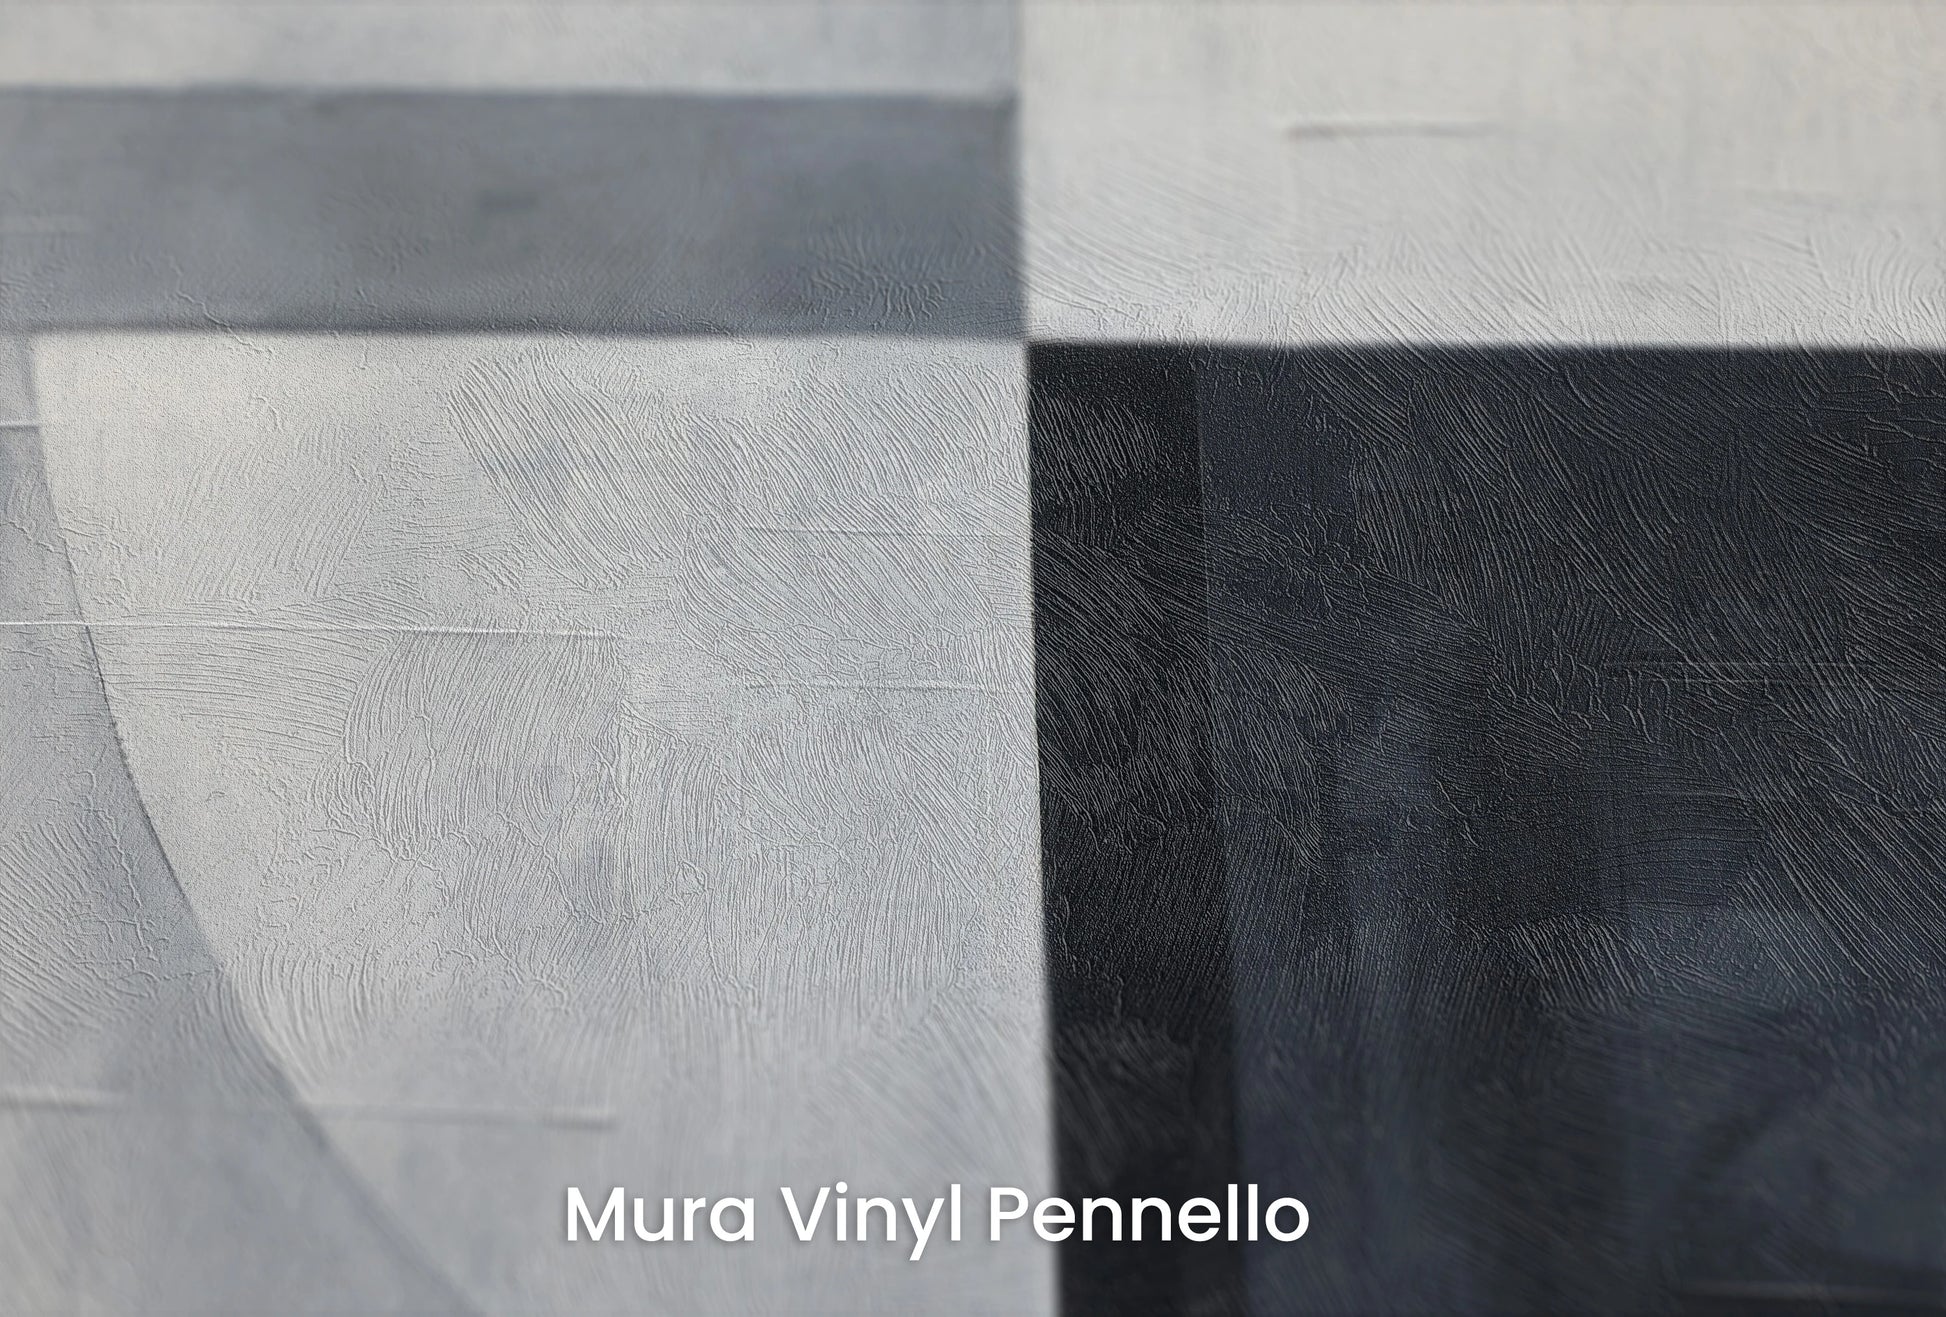 Zbliżenie na artystyczną fototapetę o nazwie Lunar Contrast na podłożu Mura Vinyl Pennello - faktura pociągnięć pędzla malarskiego.